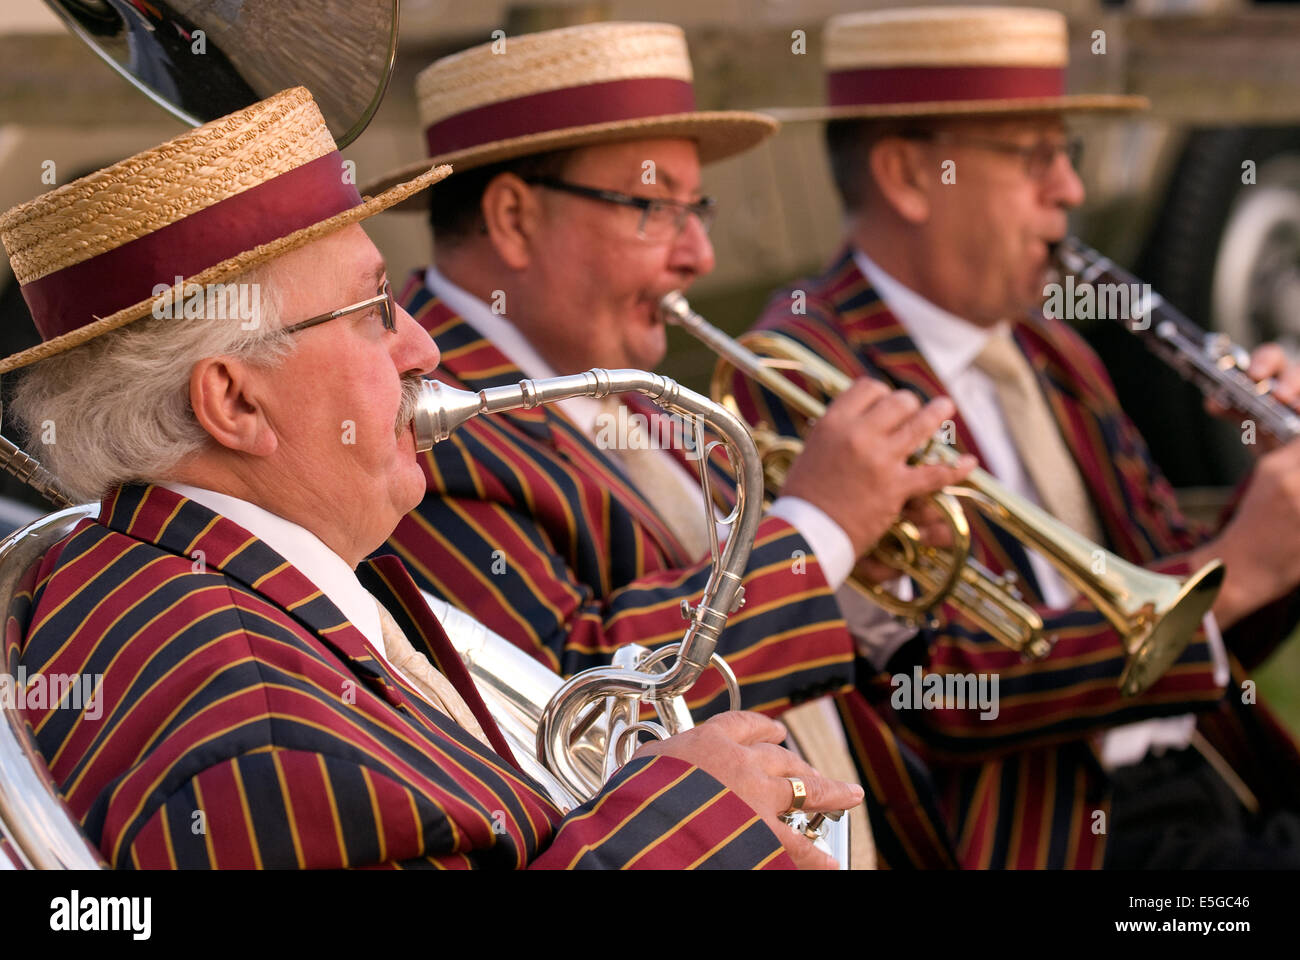 Jazz Band entretener a las multitudes en un evento de recaudación de fondos para organizaciones benéficas locales, churt, cerca de Farnham, Surrey, Reino Unido. Foto de stock